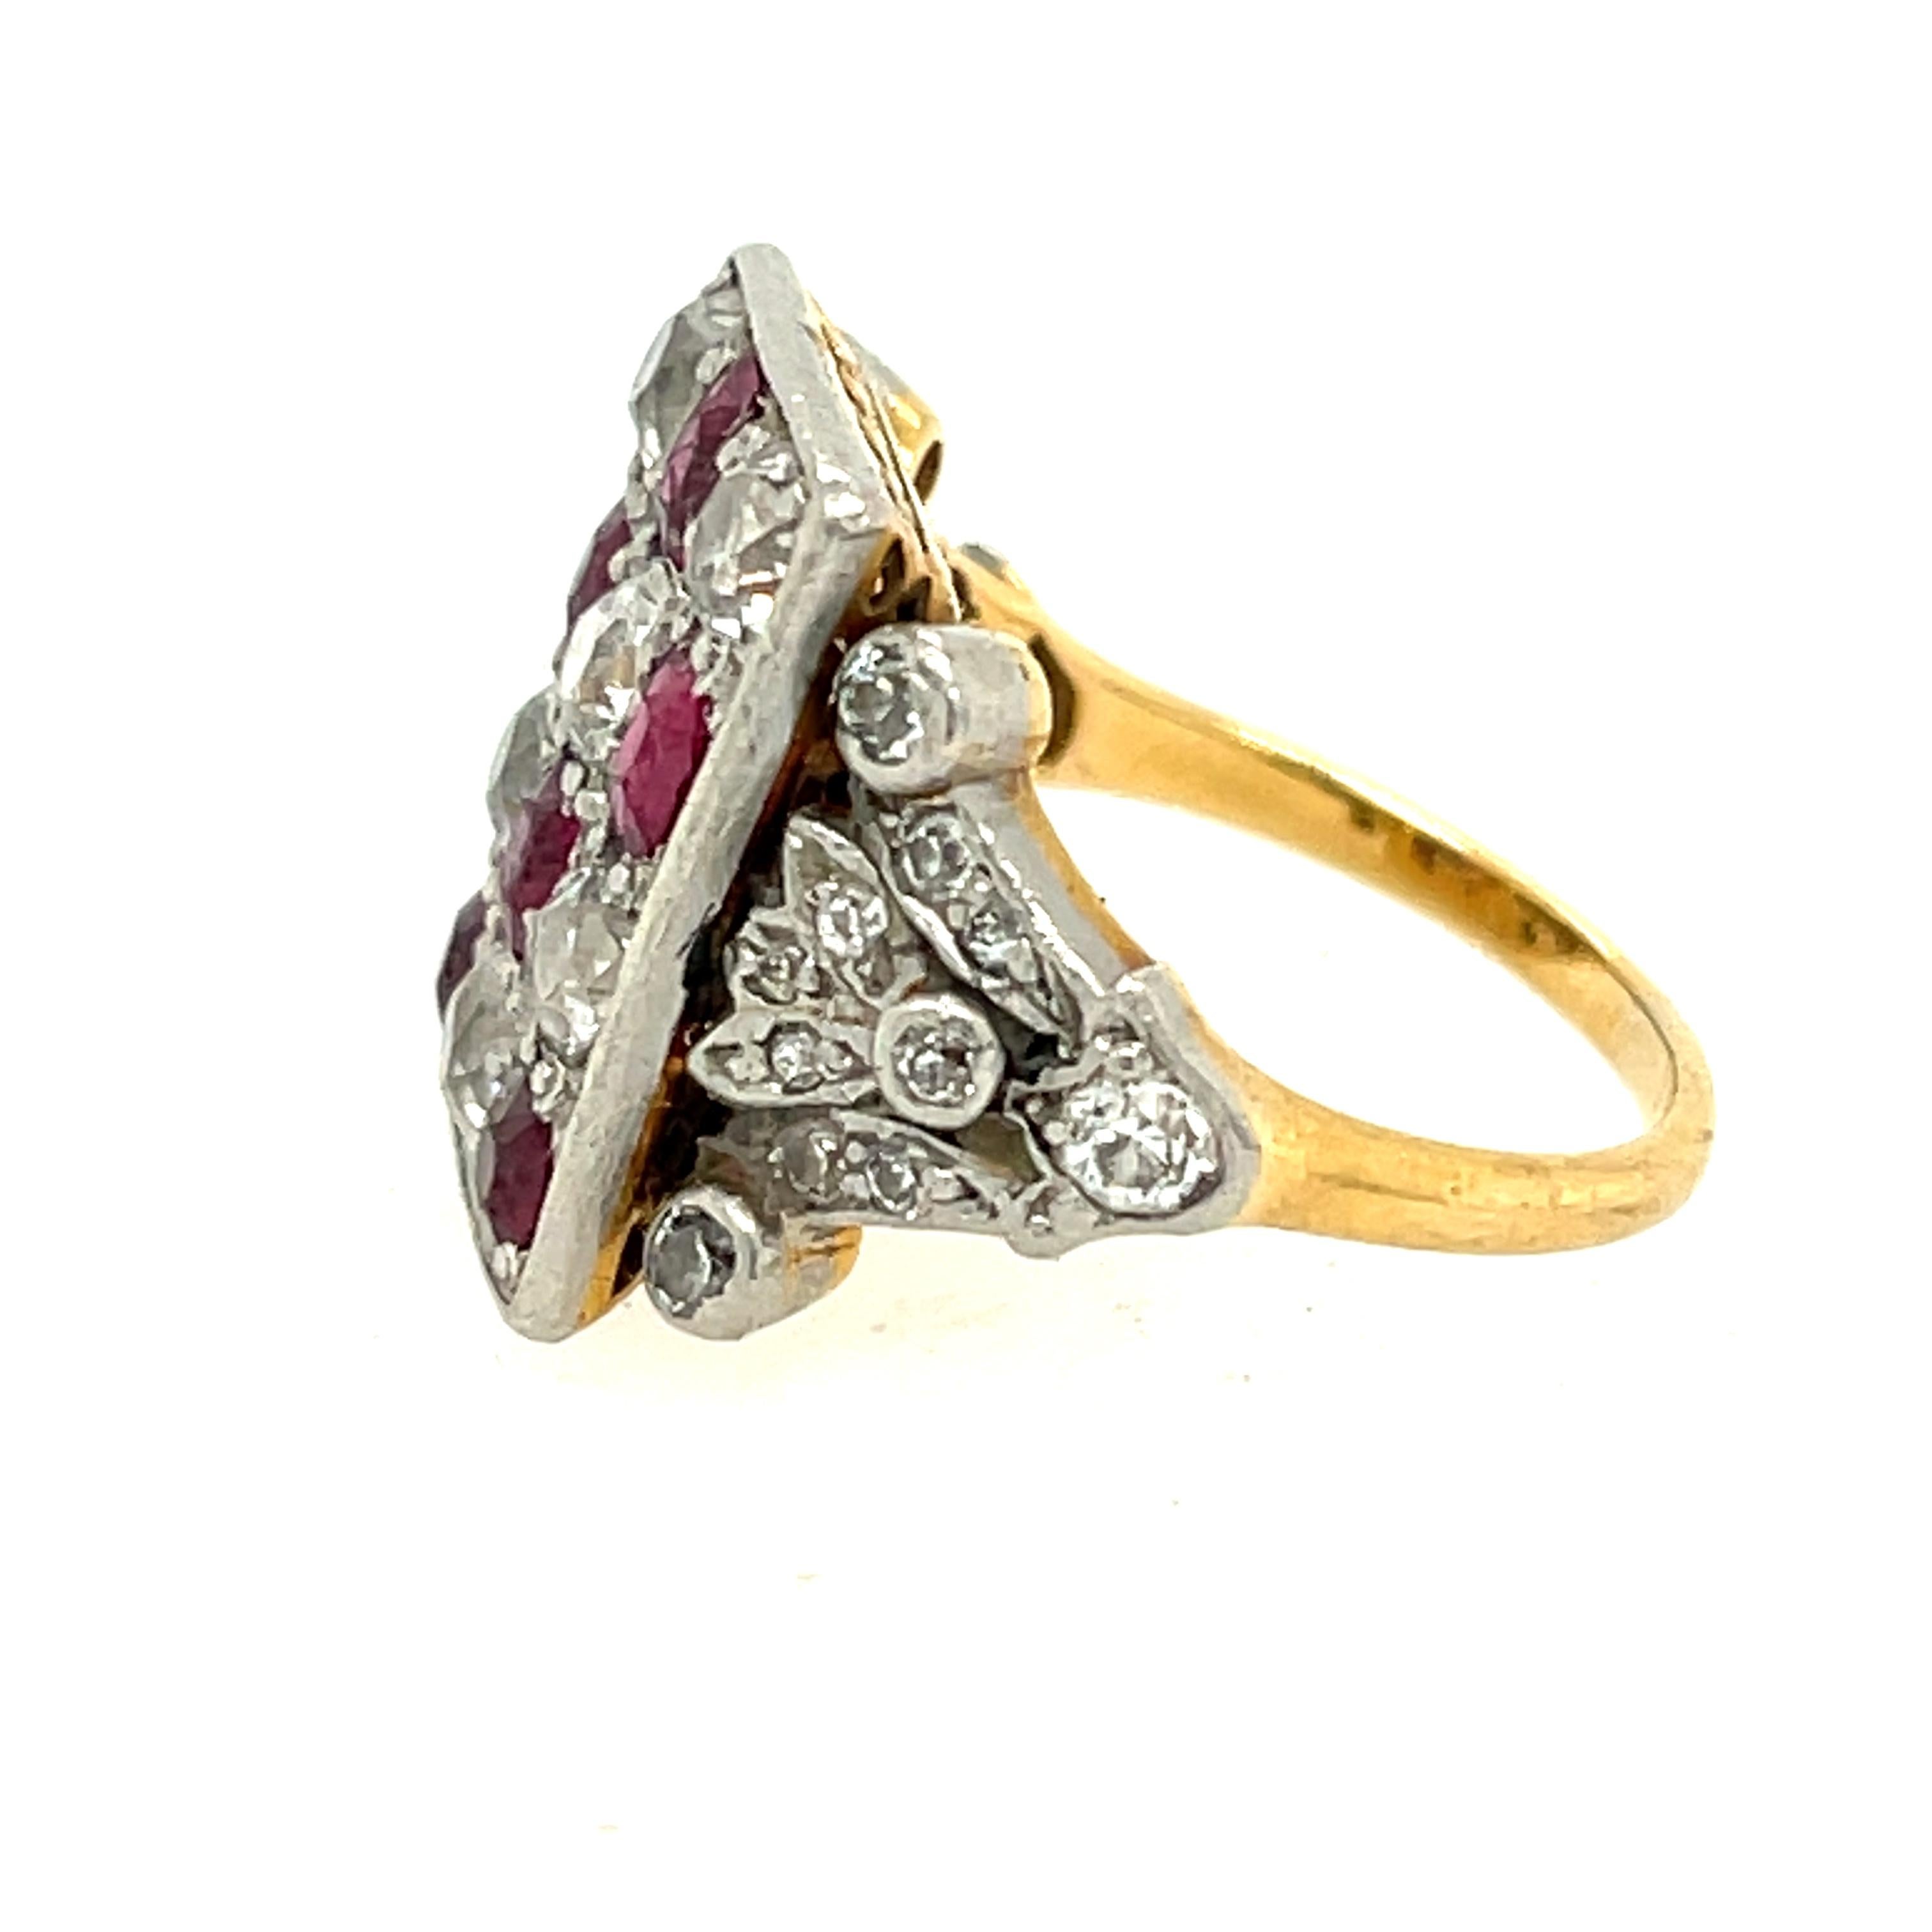 Antiker edwardianischer Ring aus Platin und 18 Karat Gelbgold mit Diamanten und Rubinen, um 1900.  Dieser einzigartige Ring weist ein Schachbrettmuster aus abwechselnden Rubinen und Diamanten auf, mit einem Diamanten an der Seite des Rings. Die 26